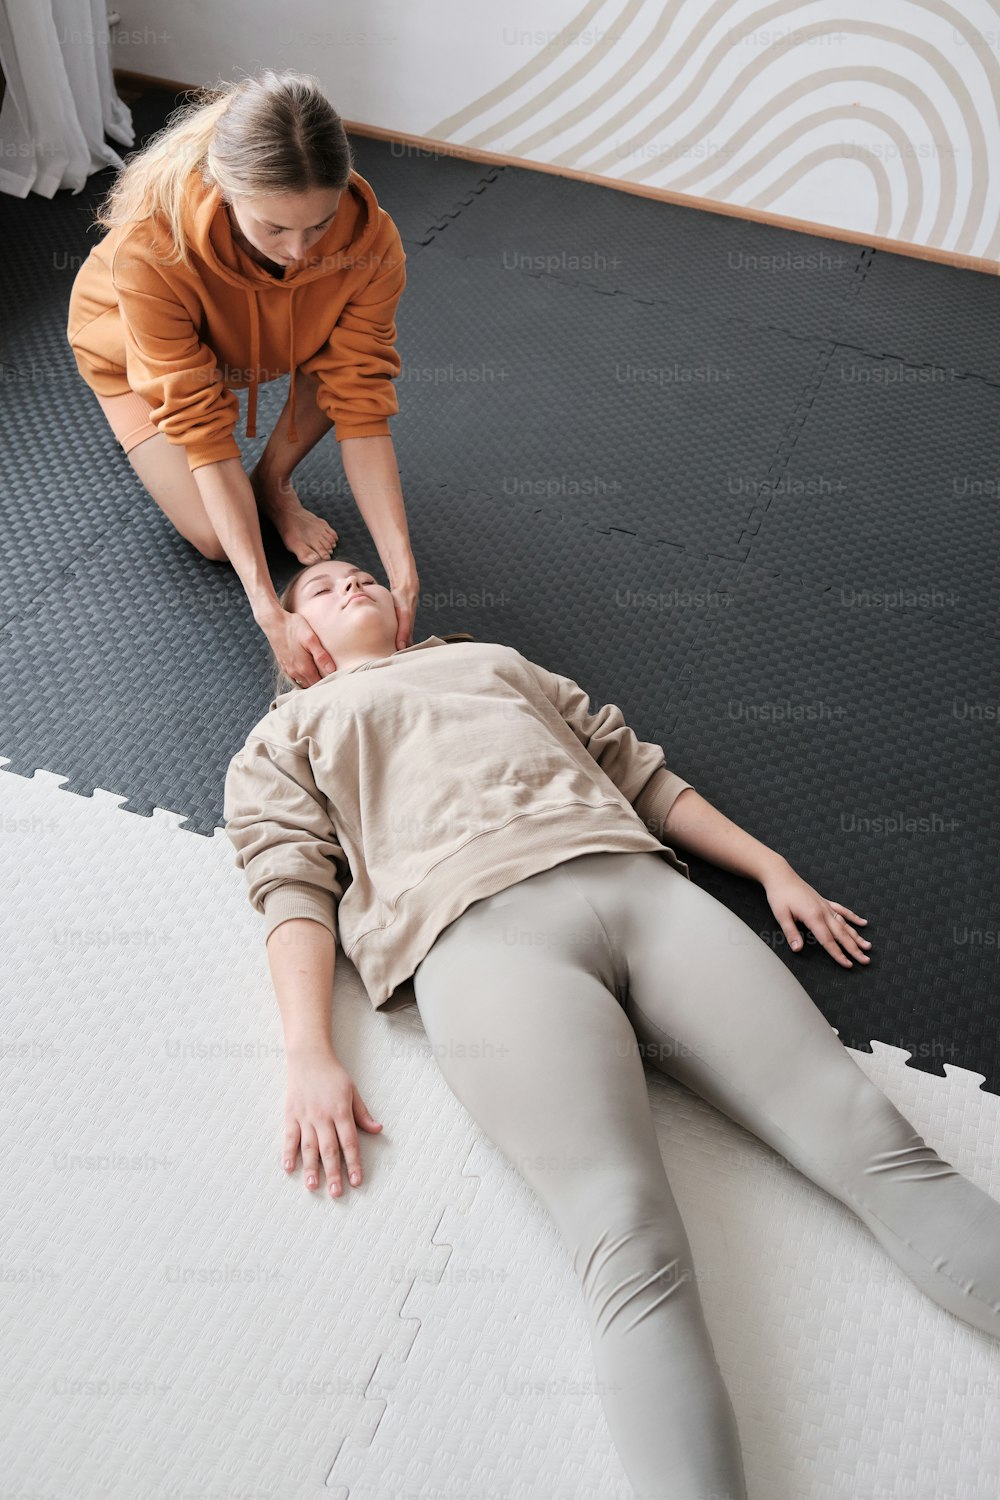 Una donna è sdraiata sul pavimento con un uomo